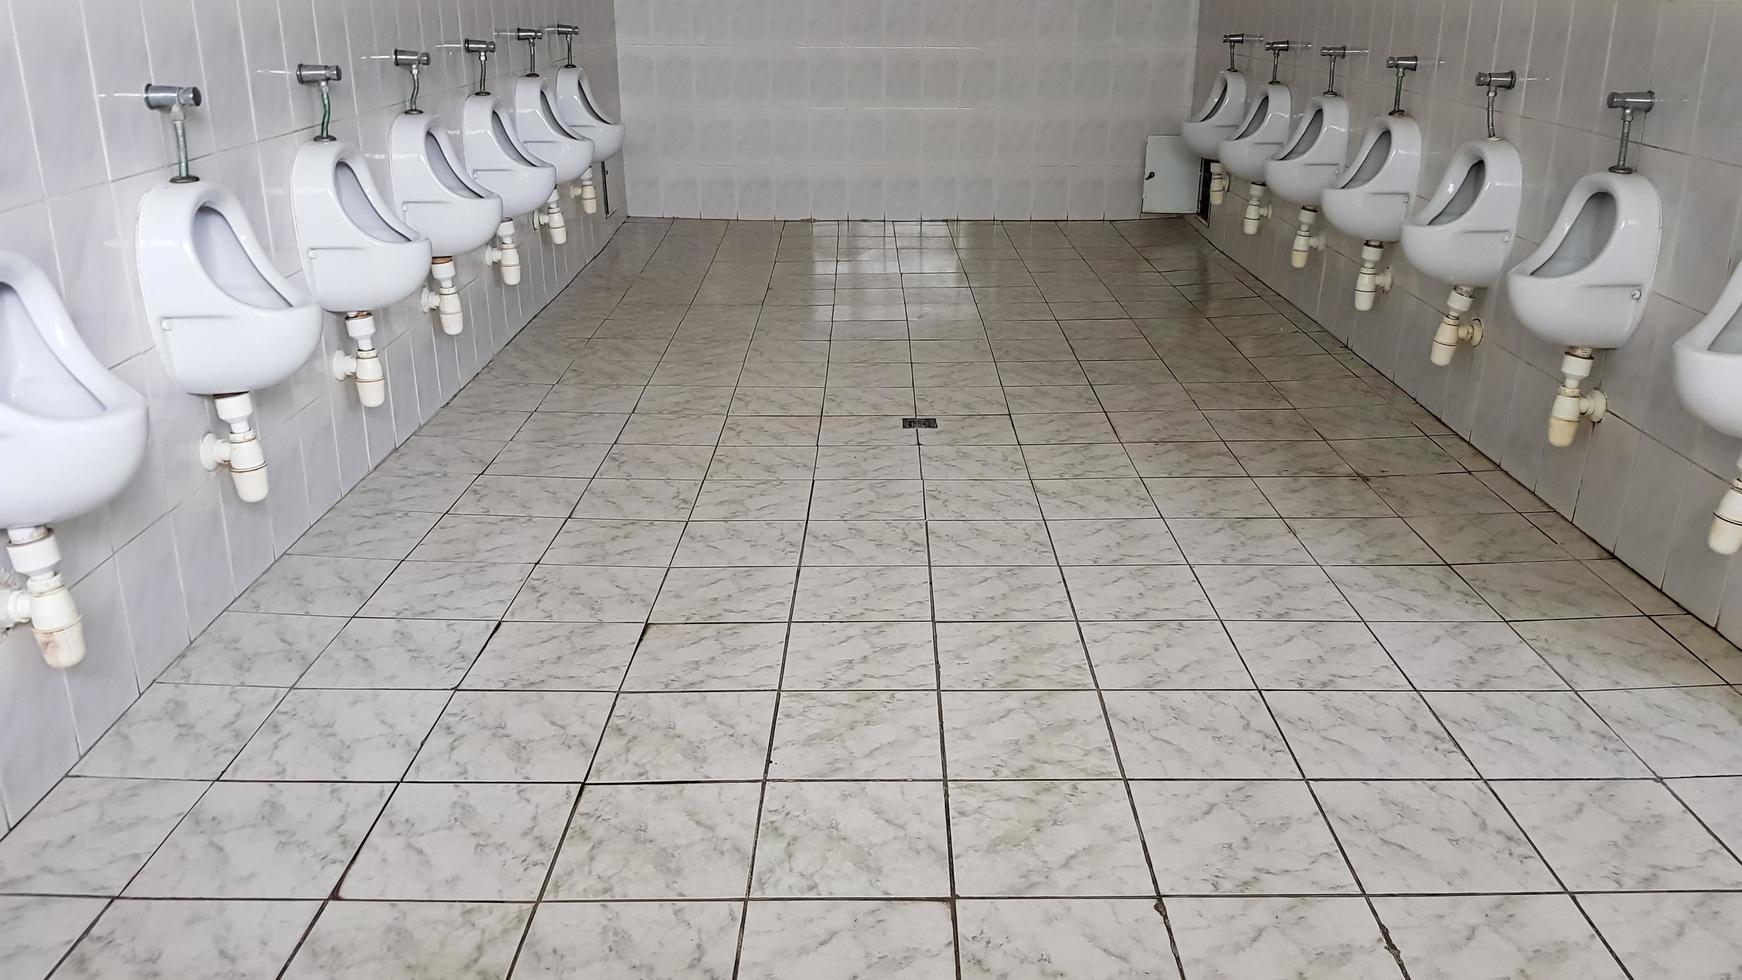 toilettes publiques avec beaucoup d'urinoirs en céramique. grandes toilettes publiques, cuvettes murales dans les toilettes. les urinoirs préparent des bols pour les hommes. photo